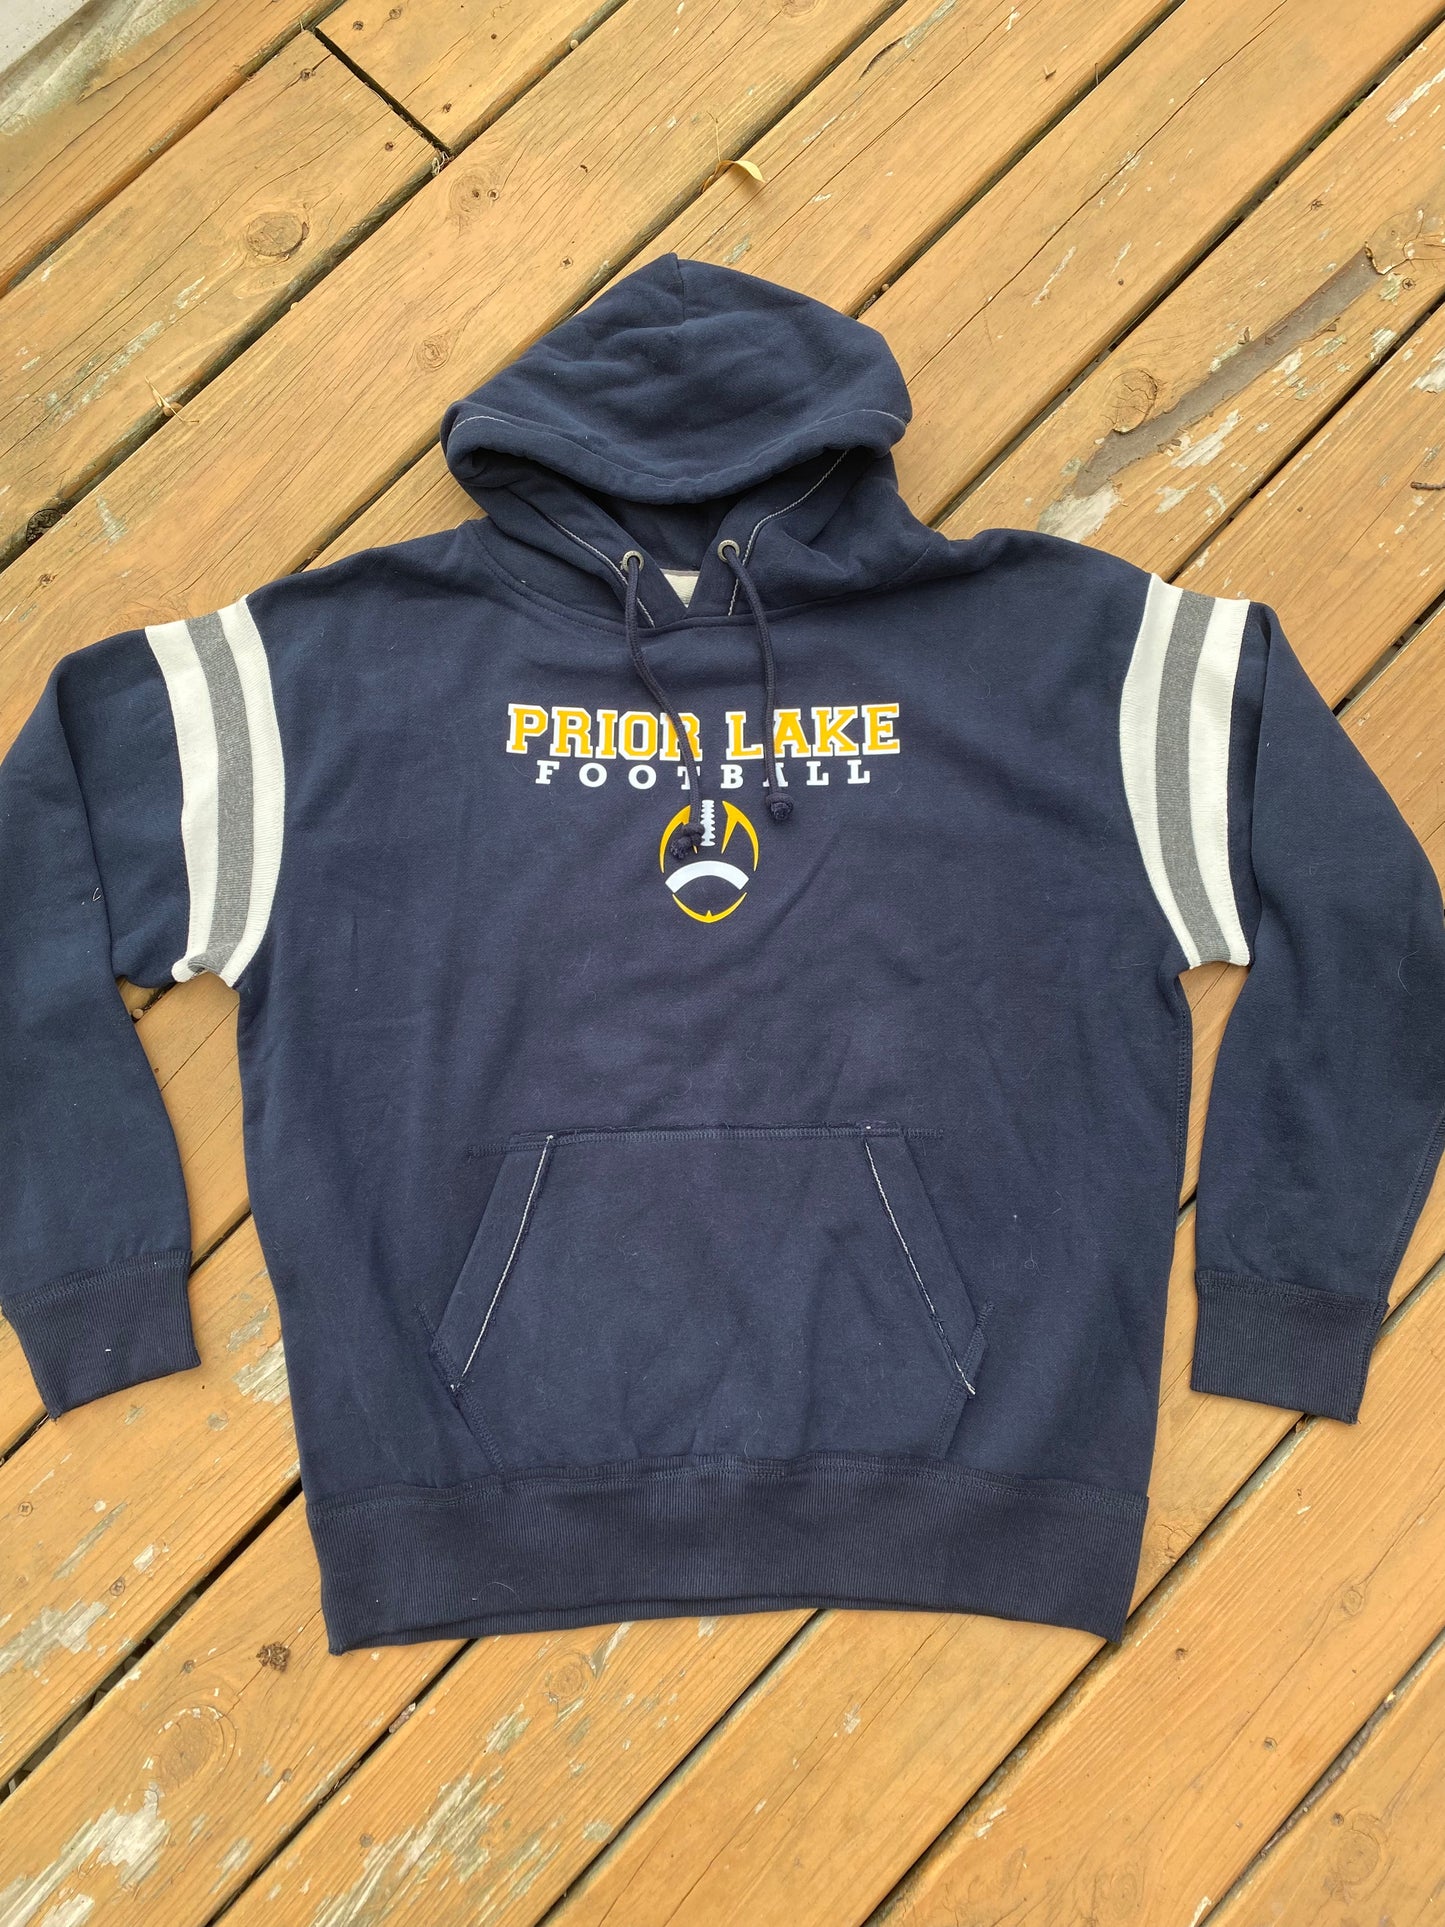 Prior lake football hoodie